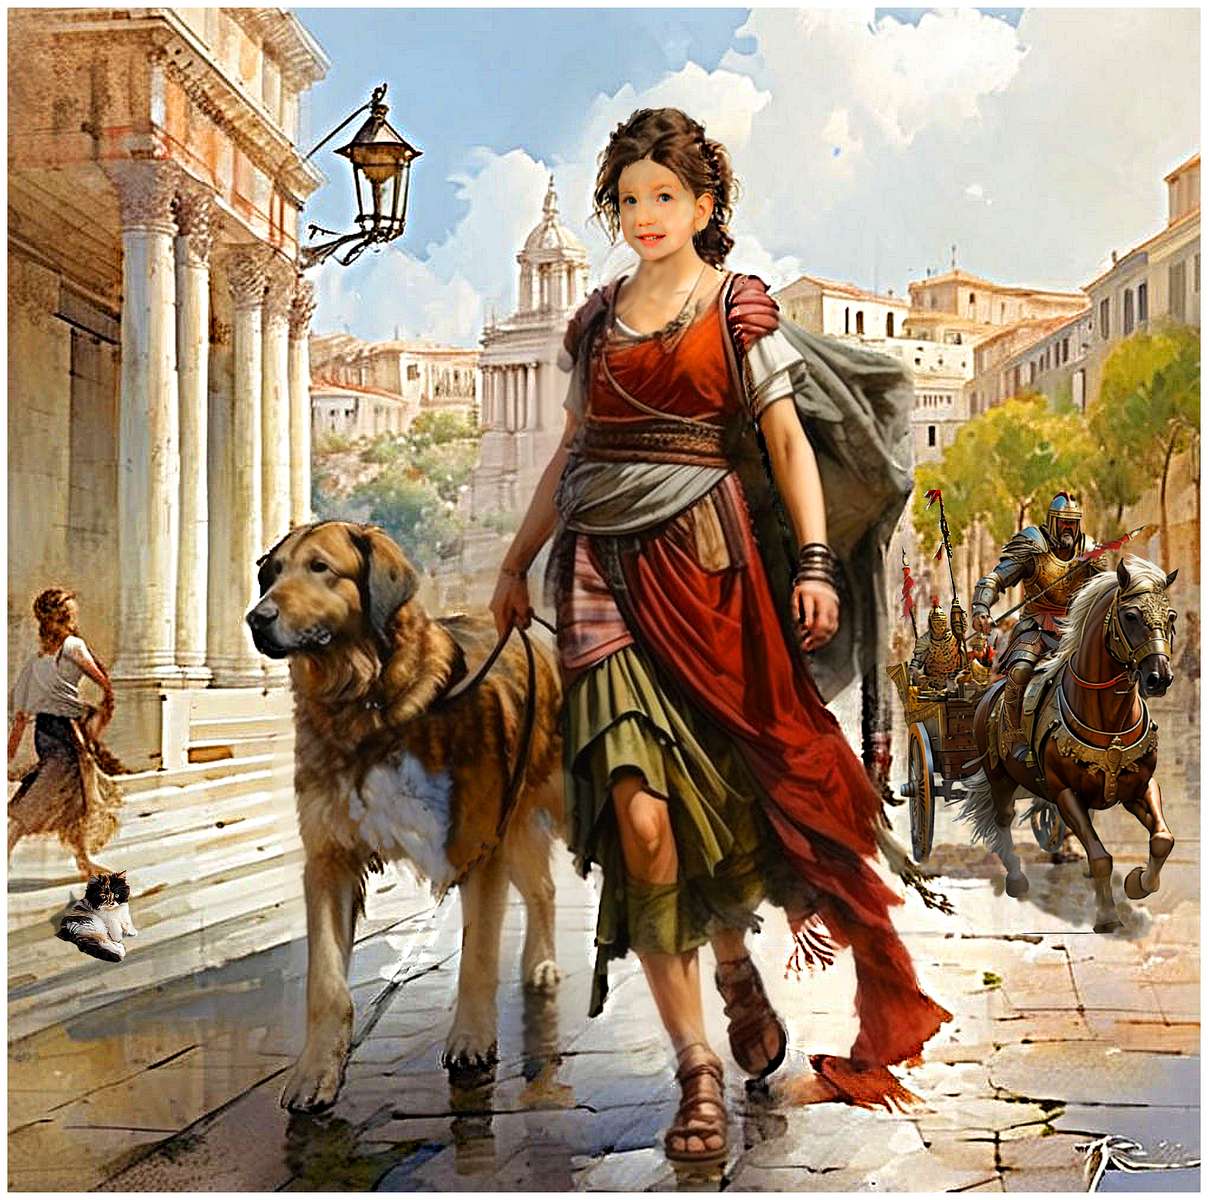 Каніс охороняє свою коханку на прогулянці в Римі. пазл онлайн